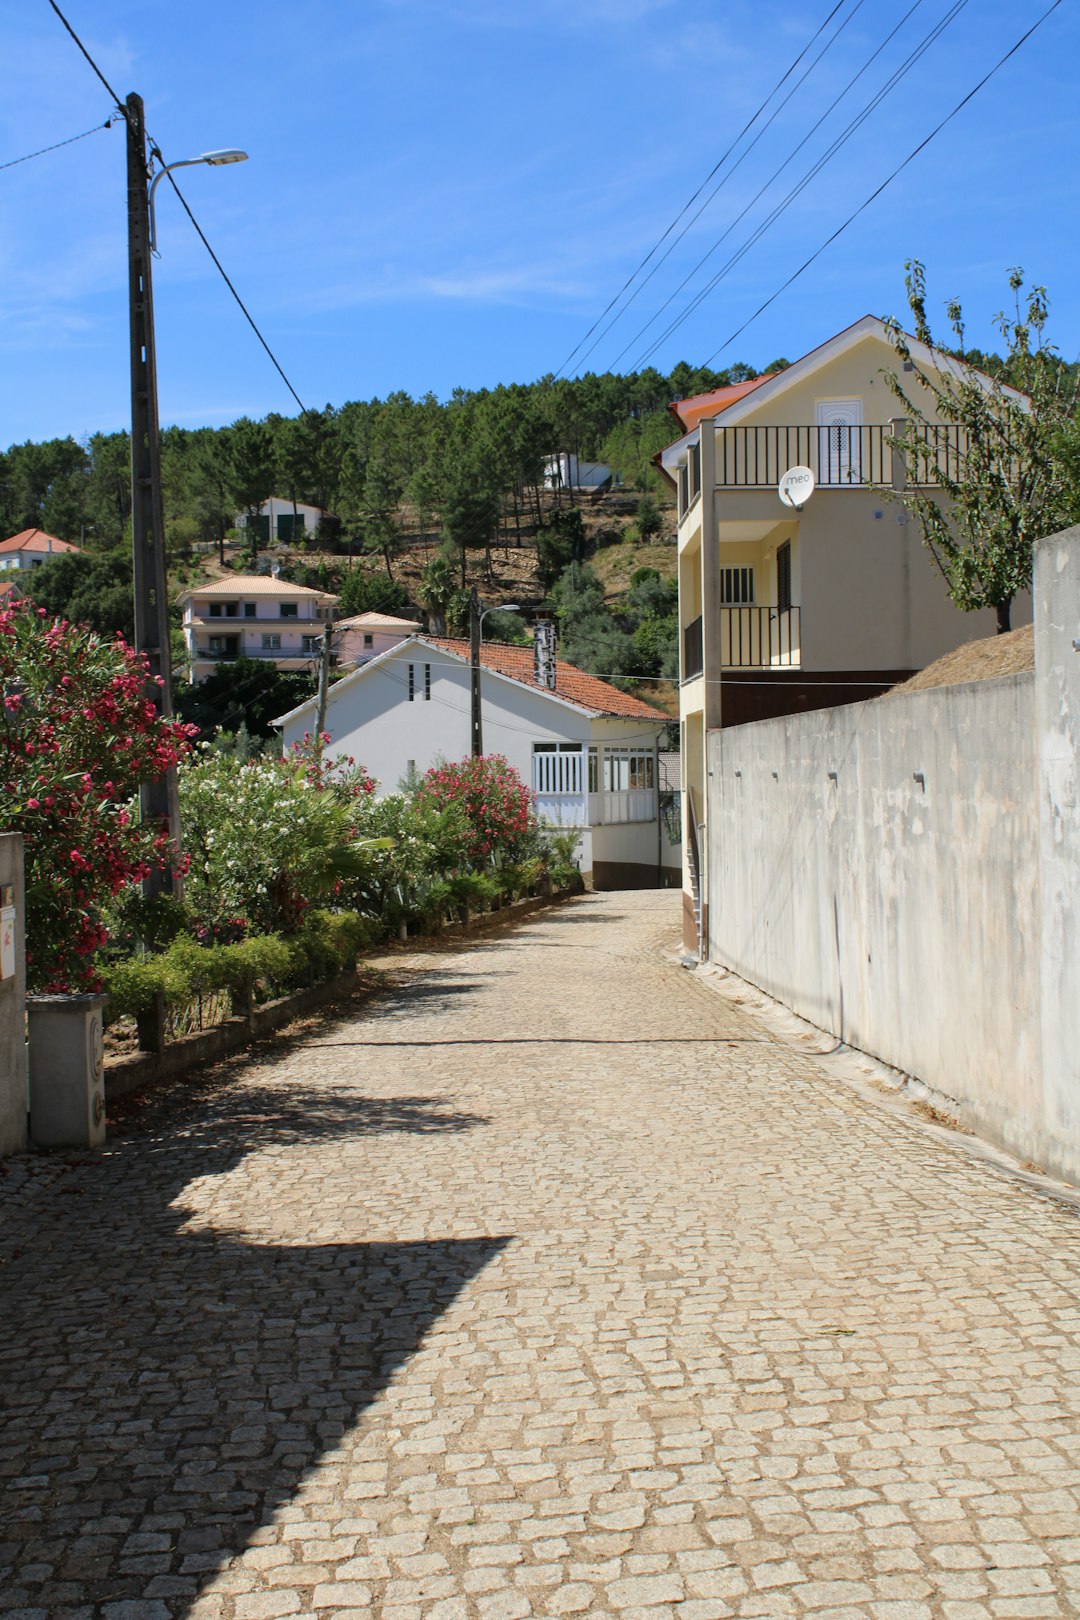 Town photo spot Descoberto University of Coimbra